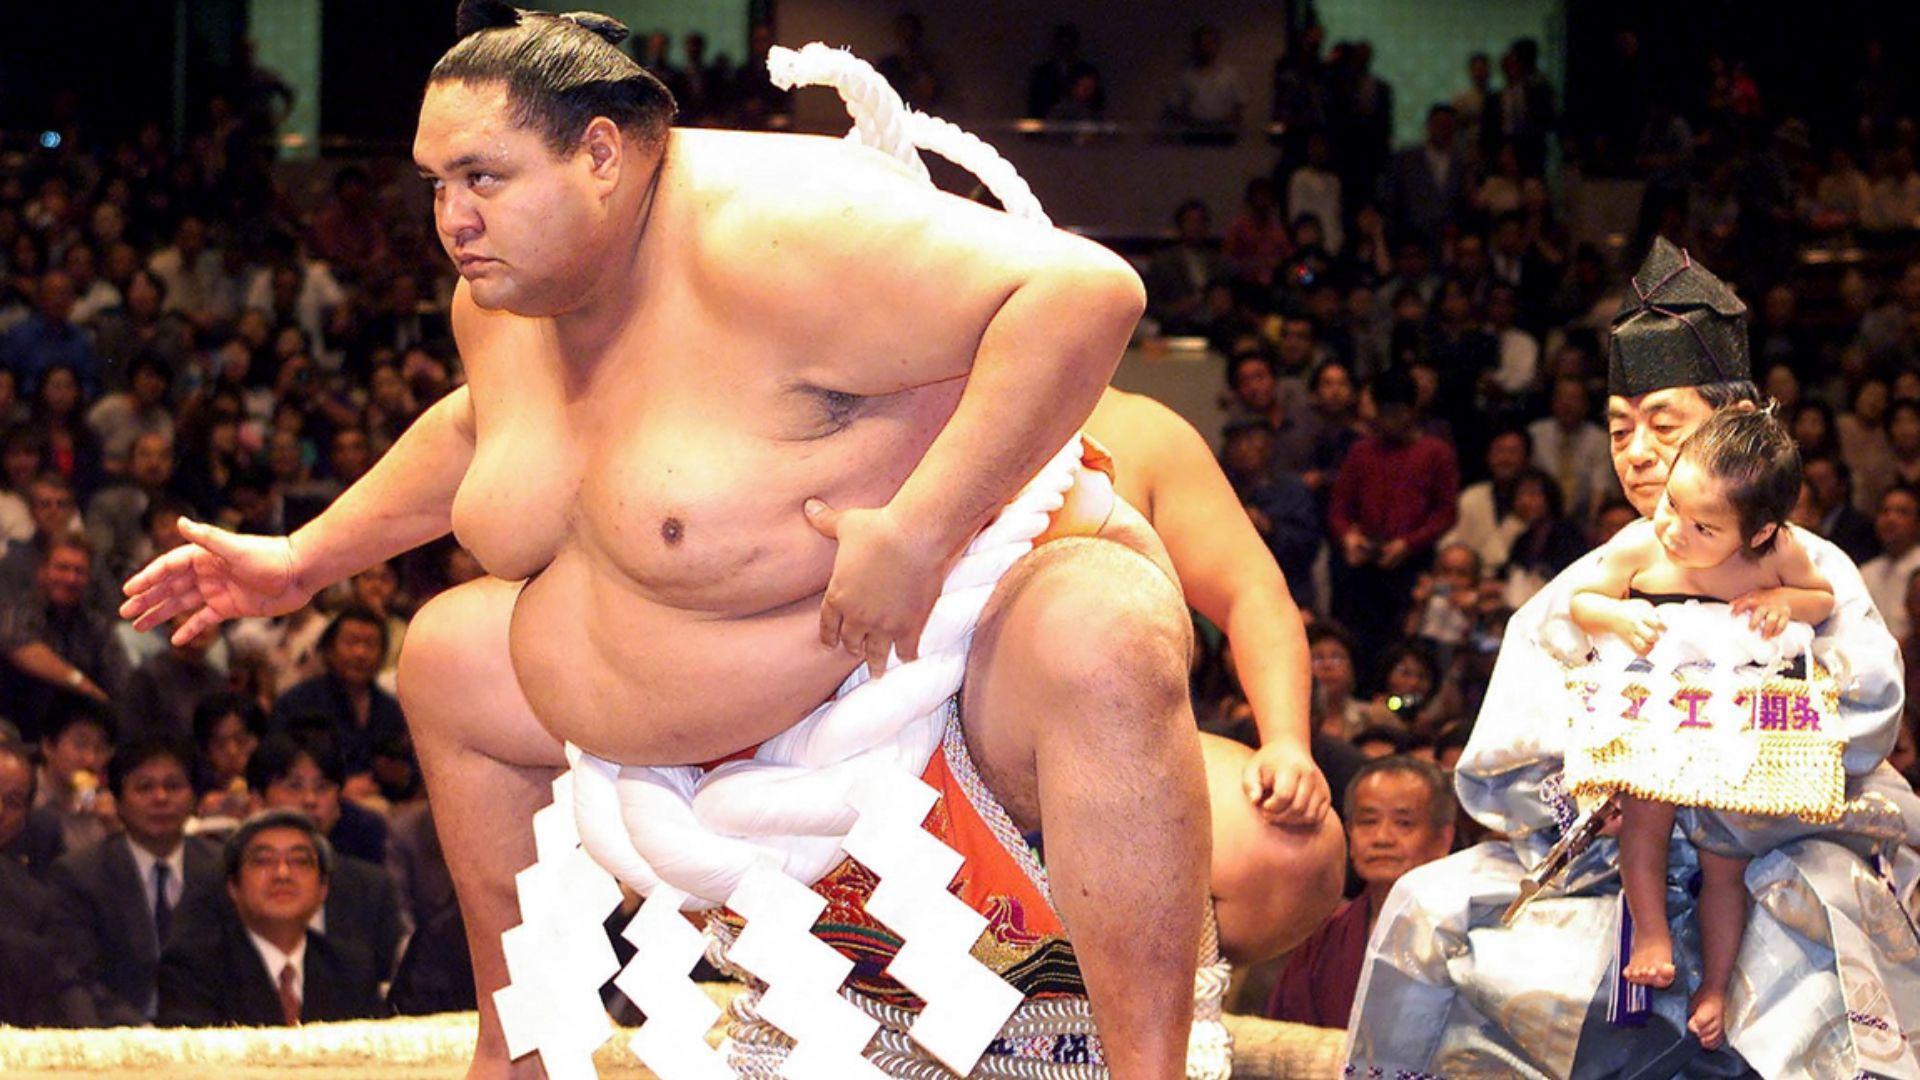 A murit Akebono. Uriașul campion de sumo s-a stins din viață la vârsta de 54 de ani